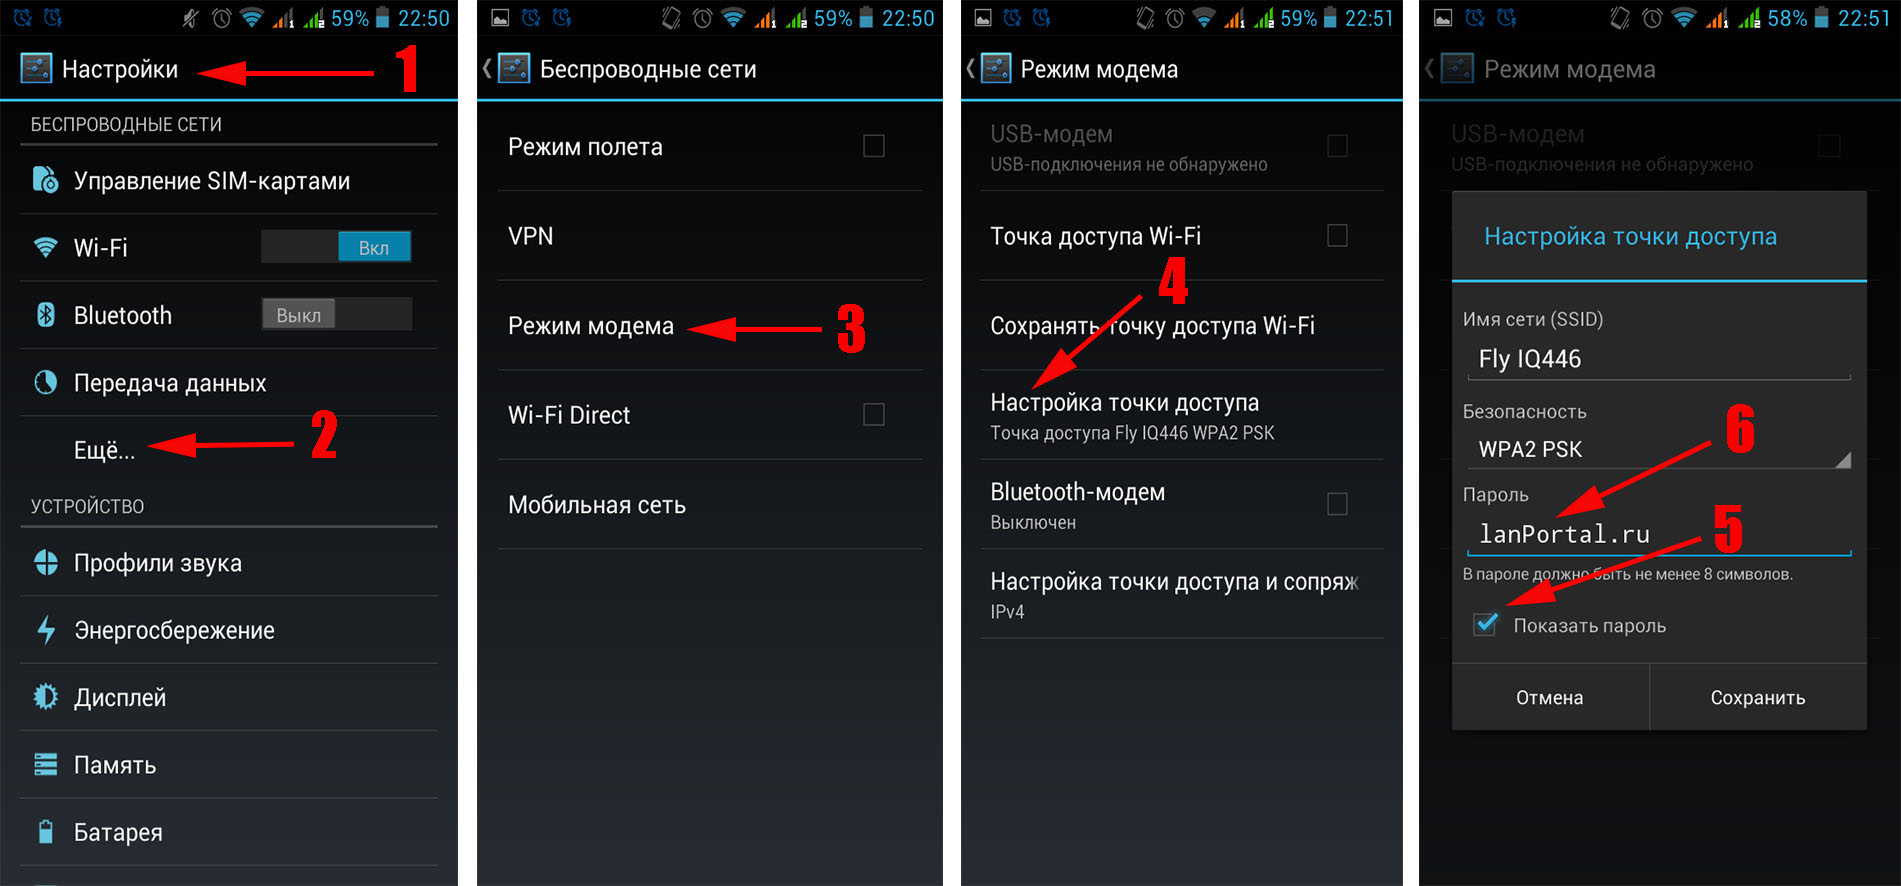 Как узнать пароль от Wi-Fi на телефоне под управлением Android: в настройках роутера, из системного конфигурационного файла, с помощью приложения